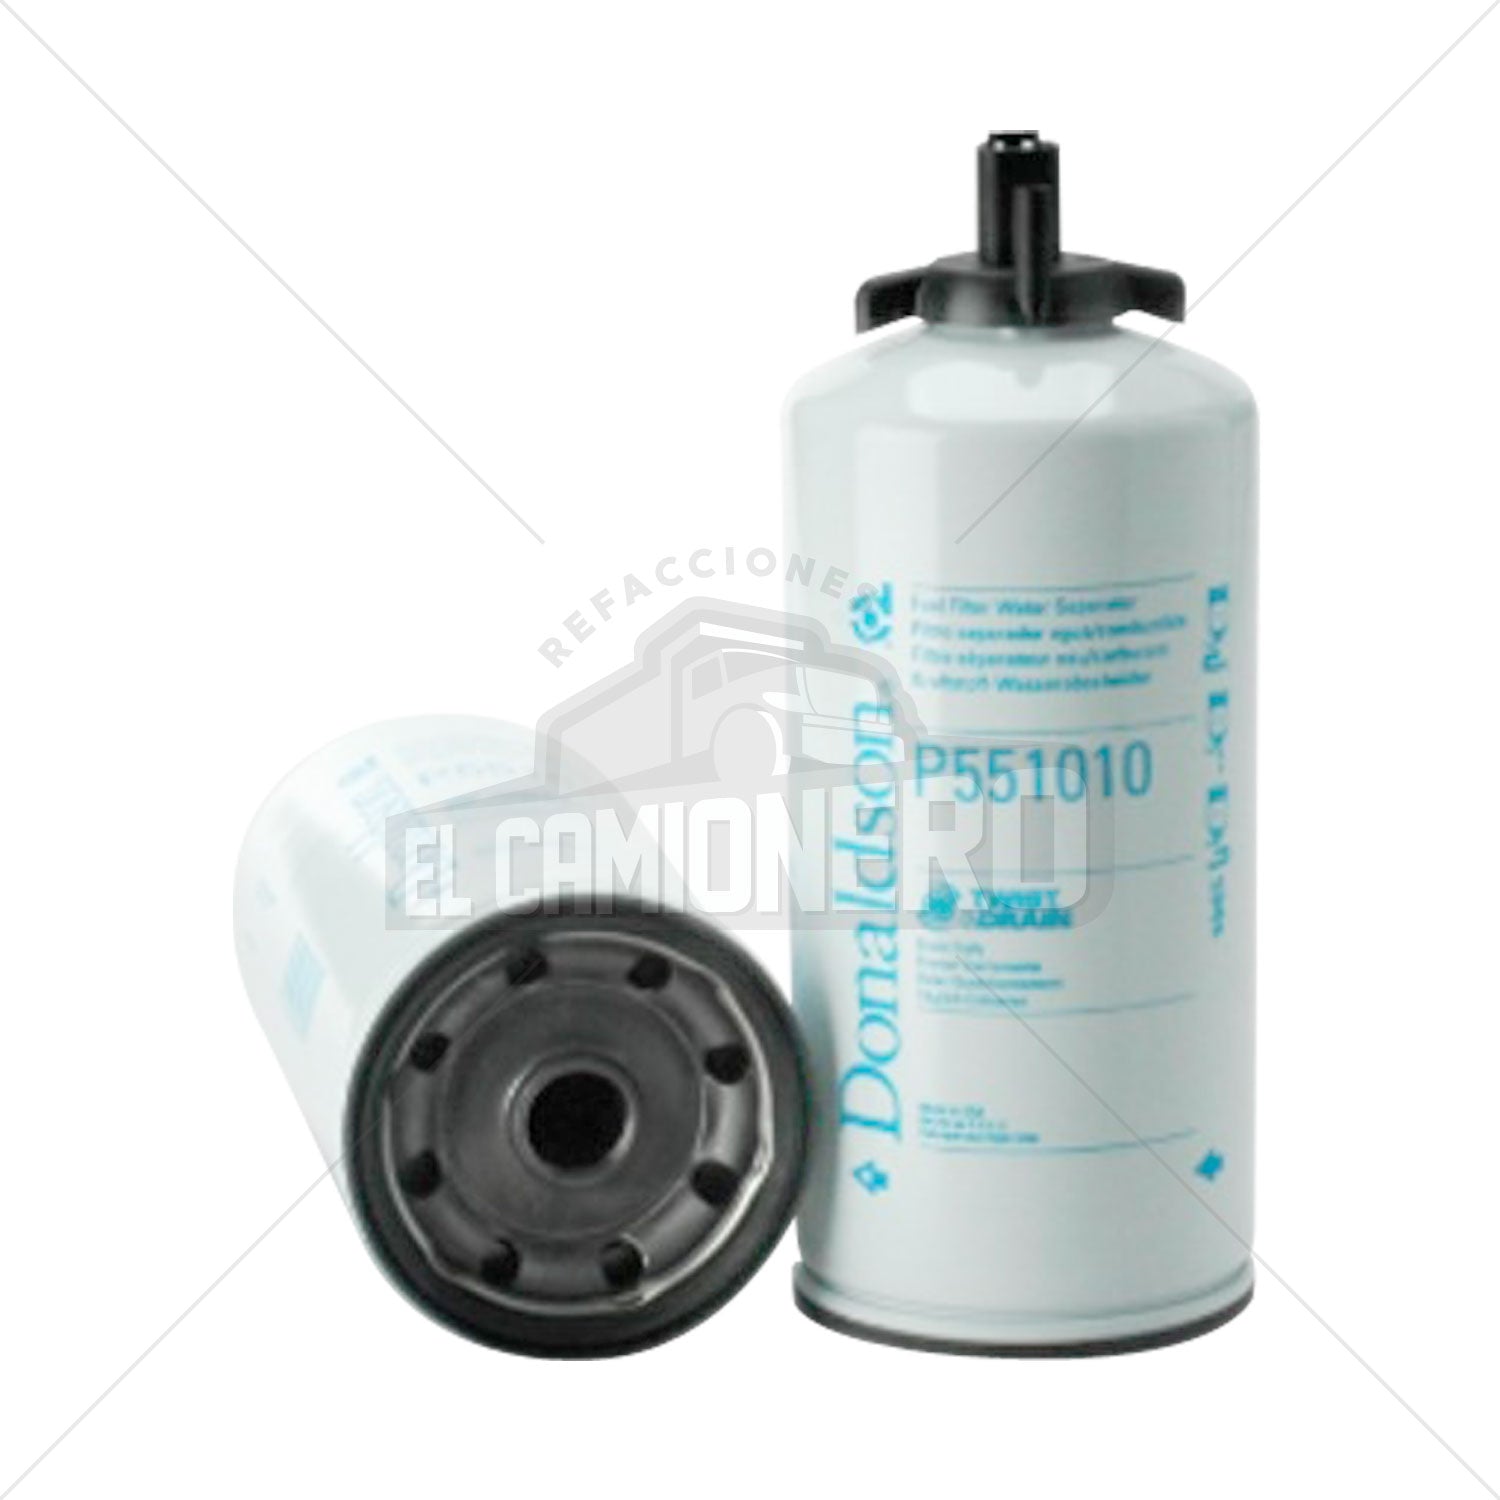 Filtro de combustible separador de agua Donaldson P551010